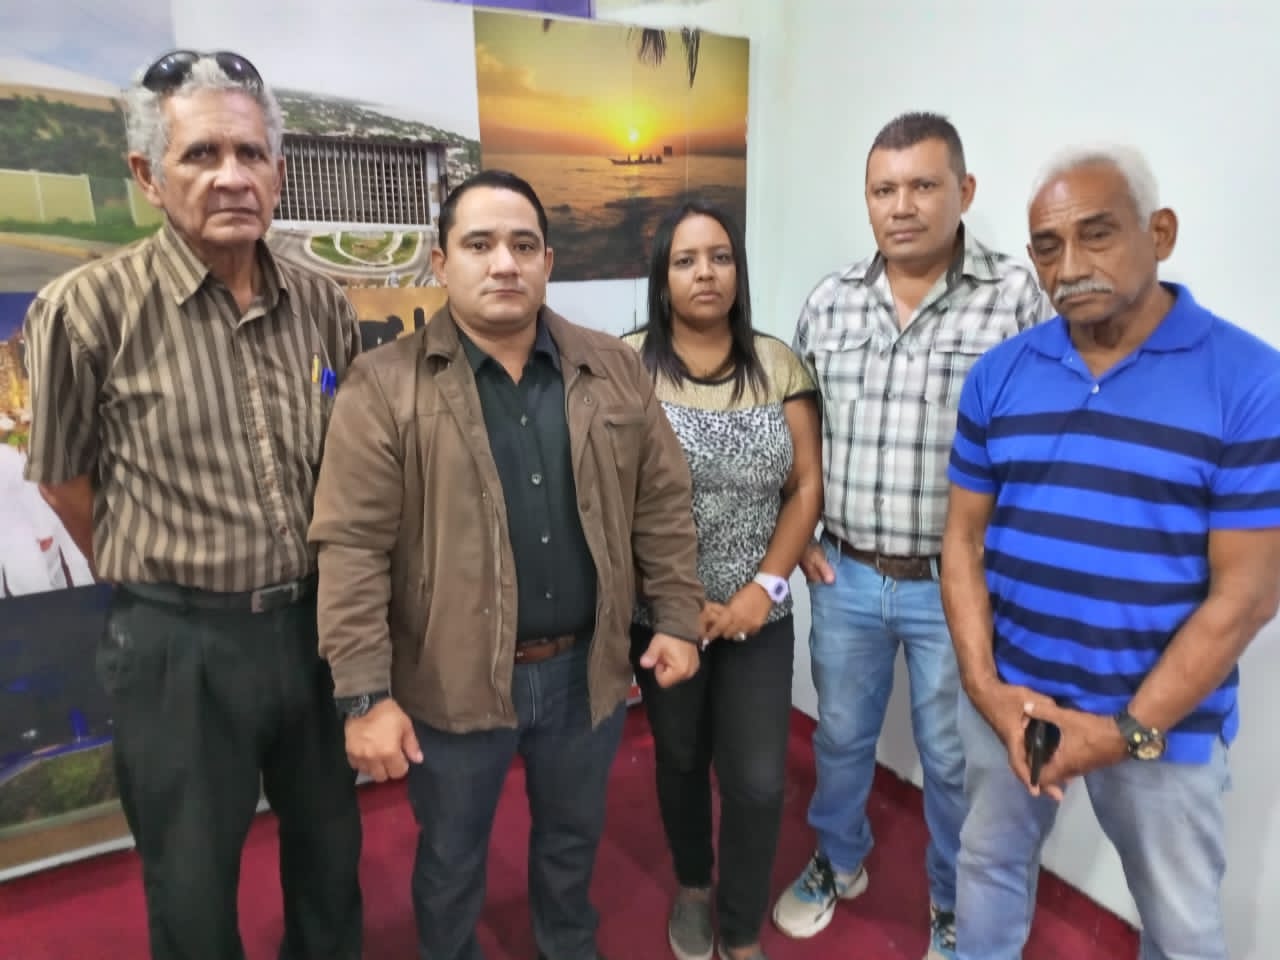 Imagen de la noticia: Municipio Cabimas: Concejales reafirman que aumento del pasaje urbano no ha sido autorizado a 3 bolivares